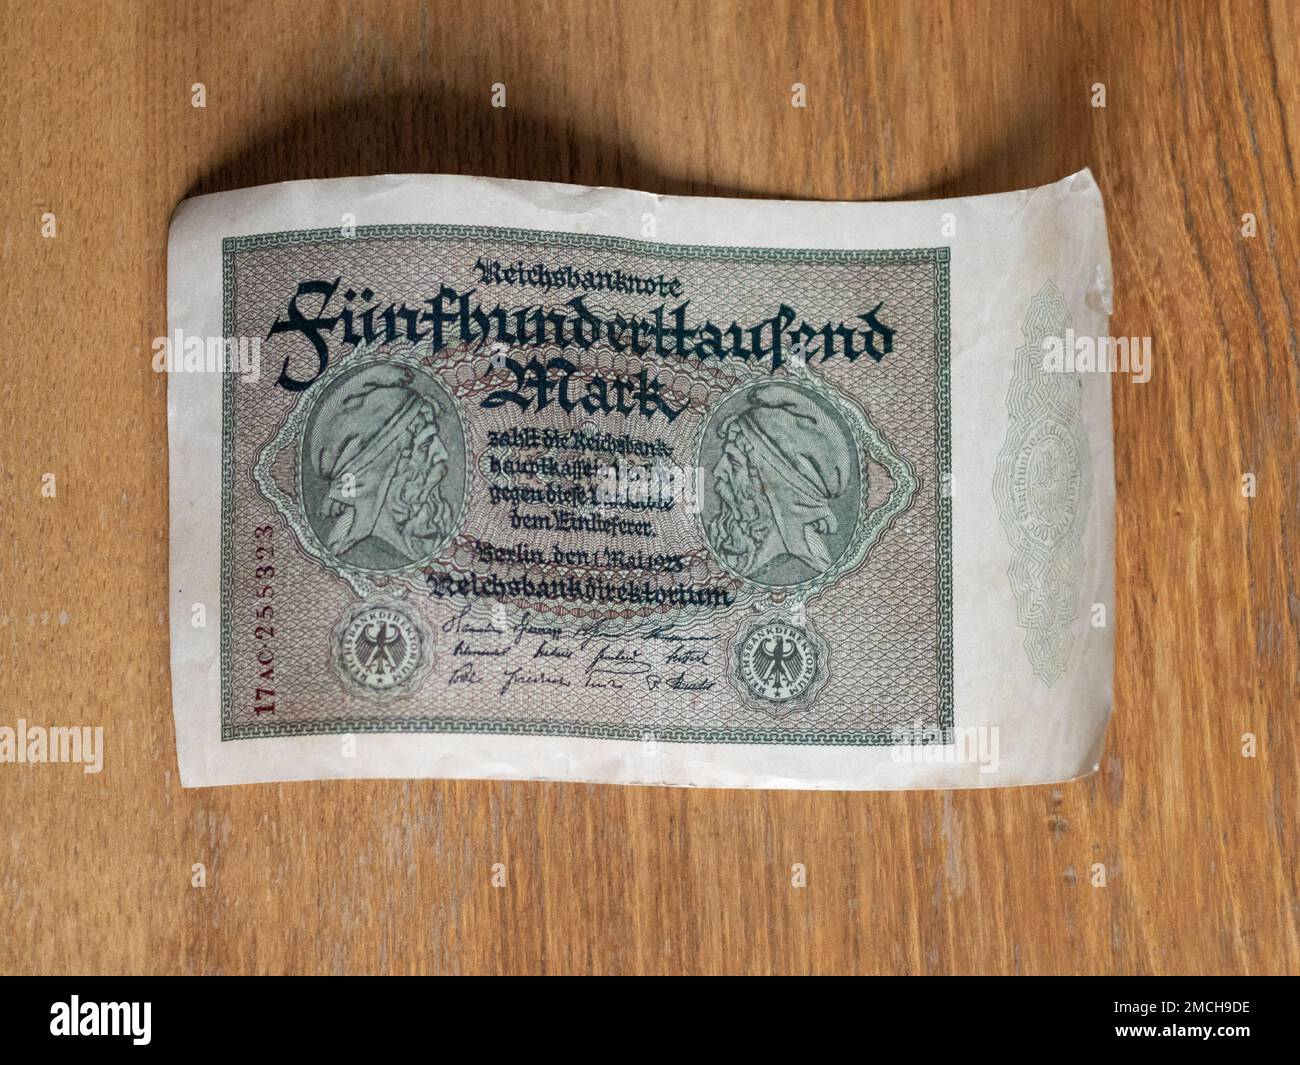 Reichsbanknote im Wert von 500,000 Mark während der Hyperinflation 1923. Historisches Geld in Deutschland, als die Bank viele Banknoten druckte. Stockfoto